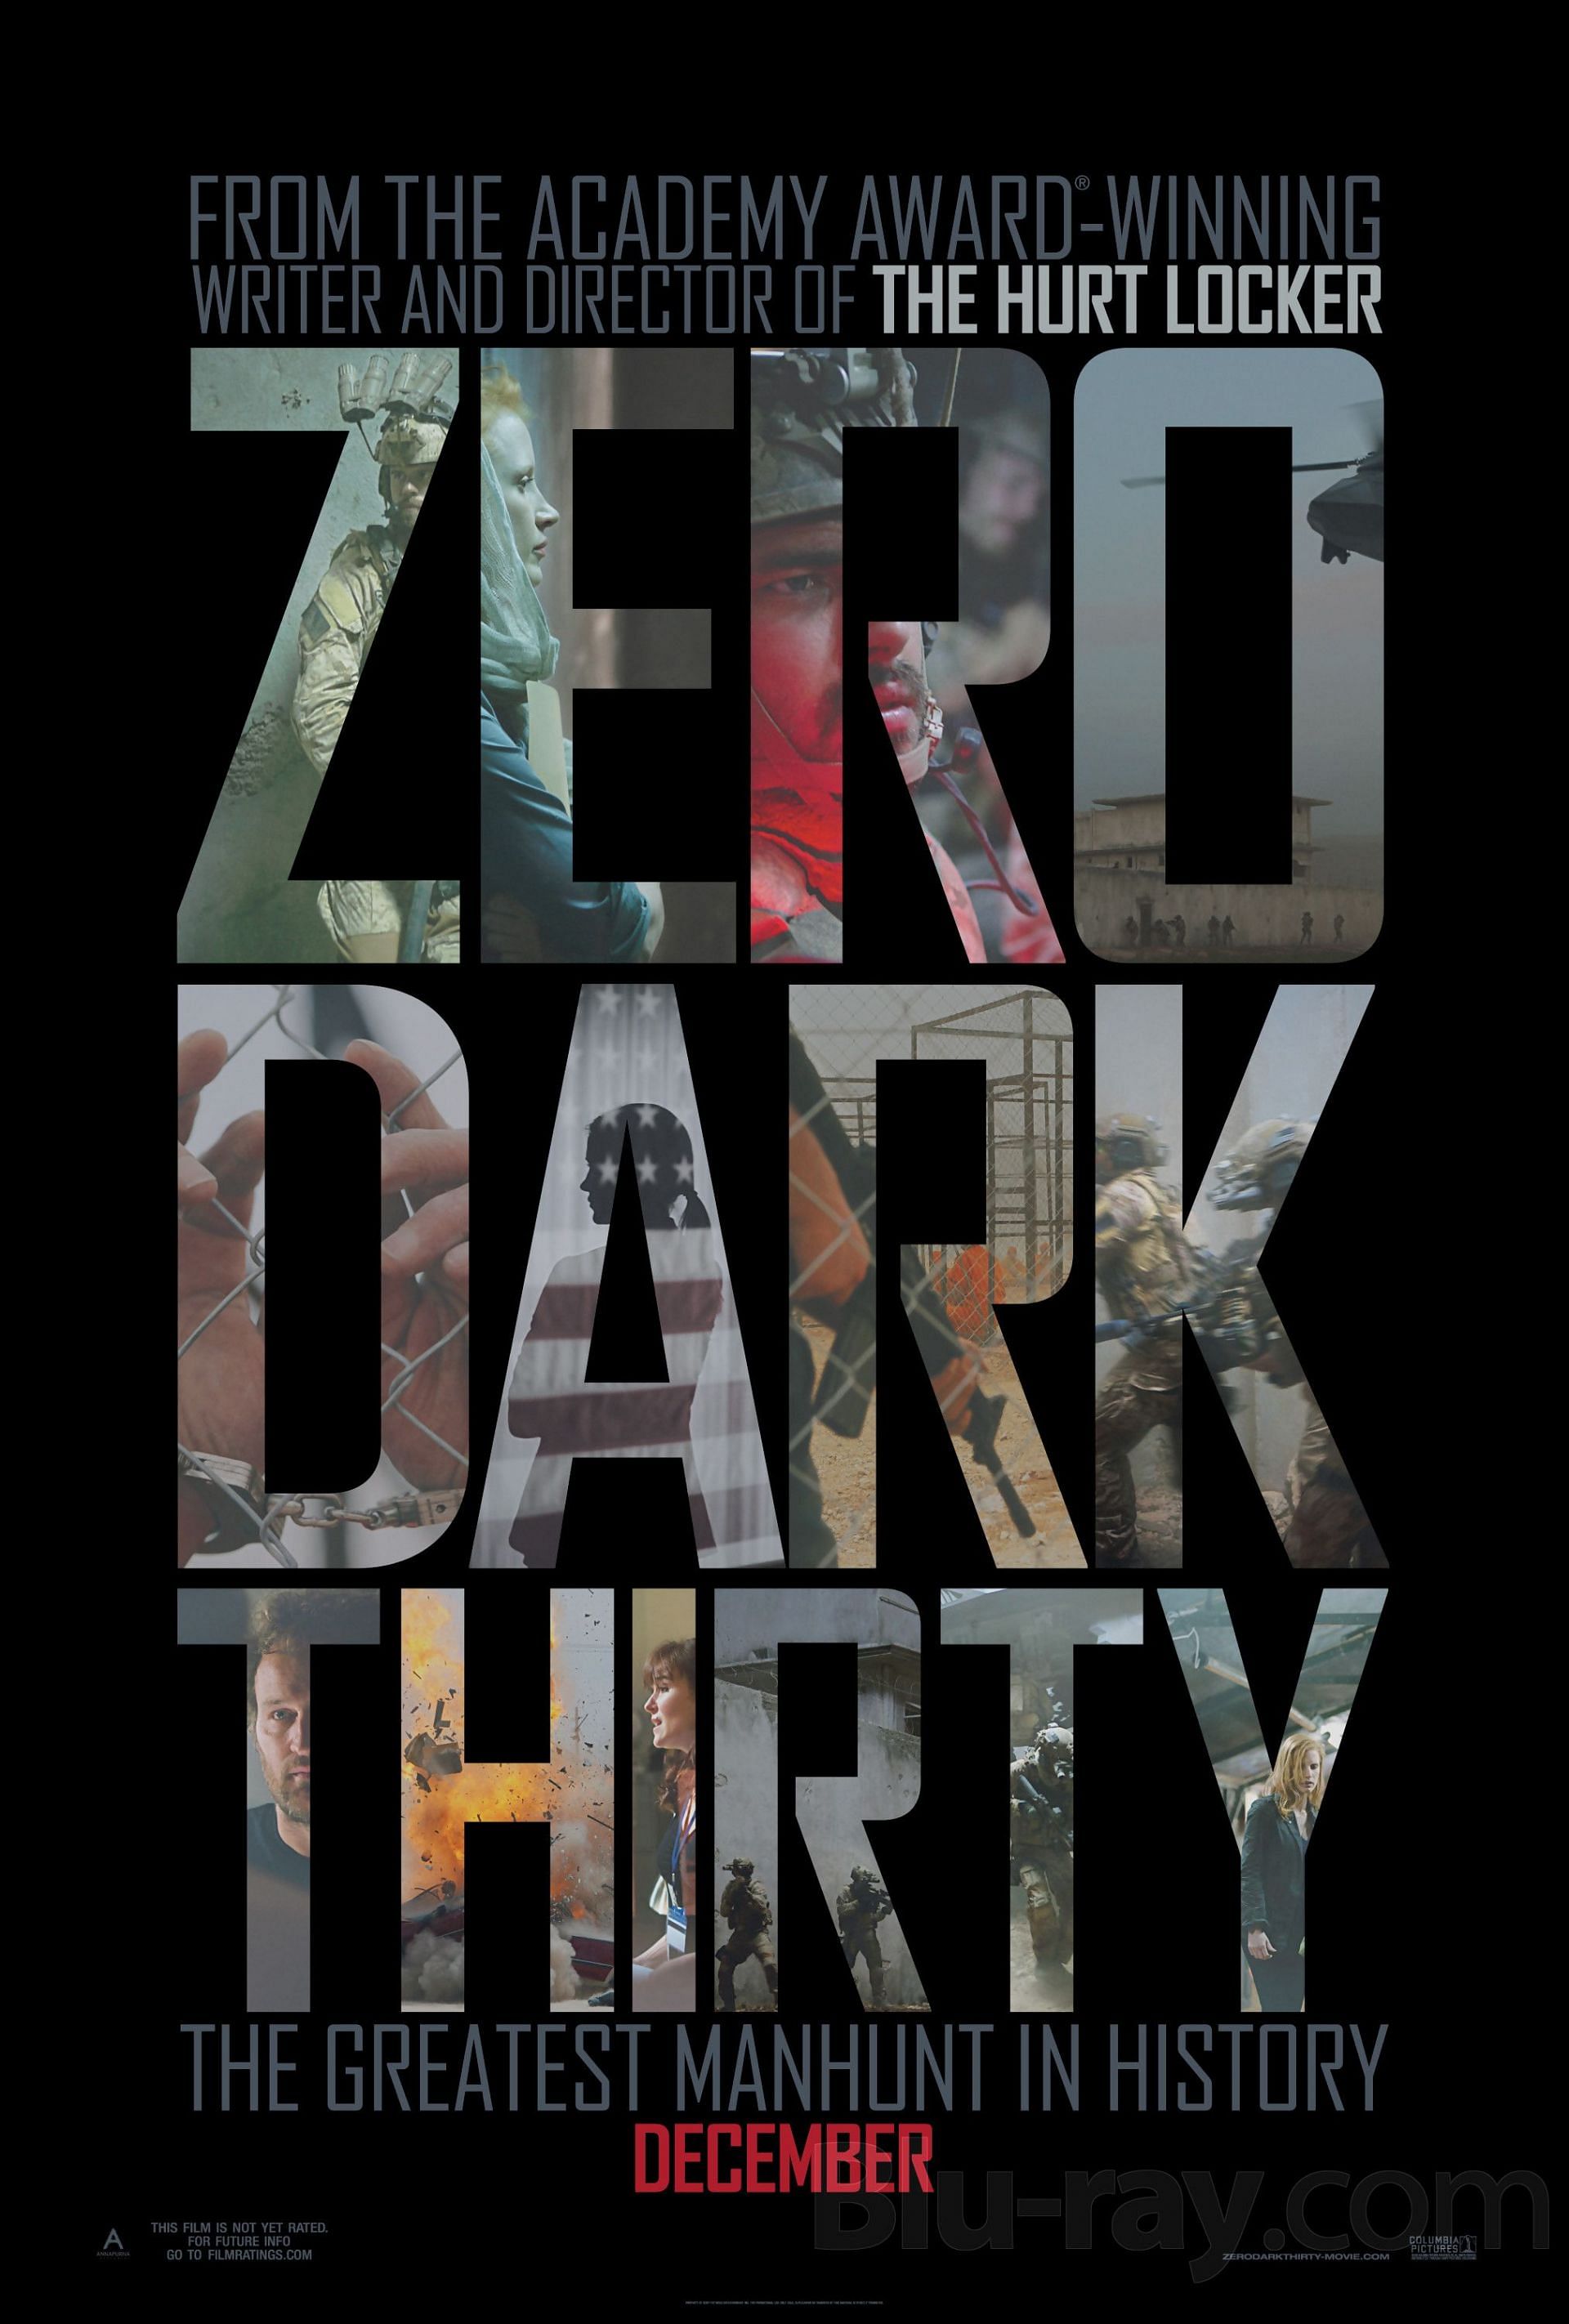 Zero Dark Thirty (Image via Sony Pictures)